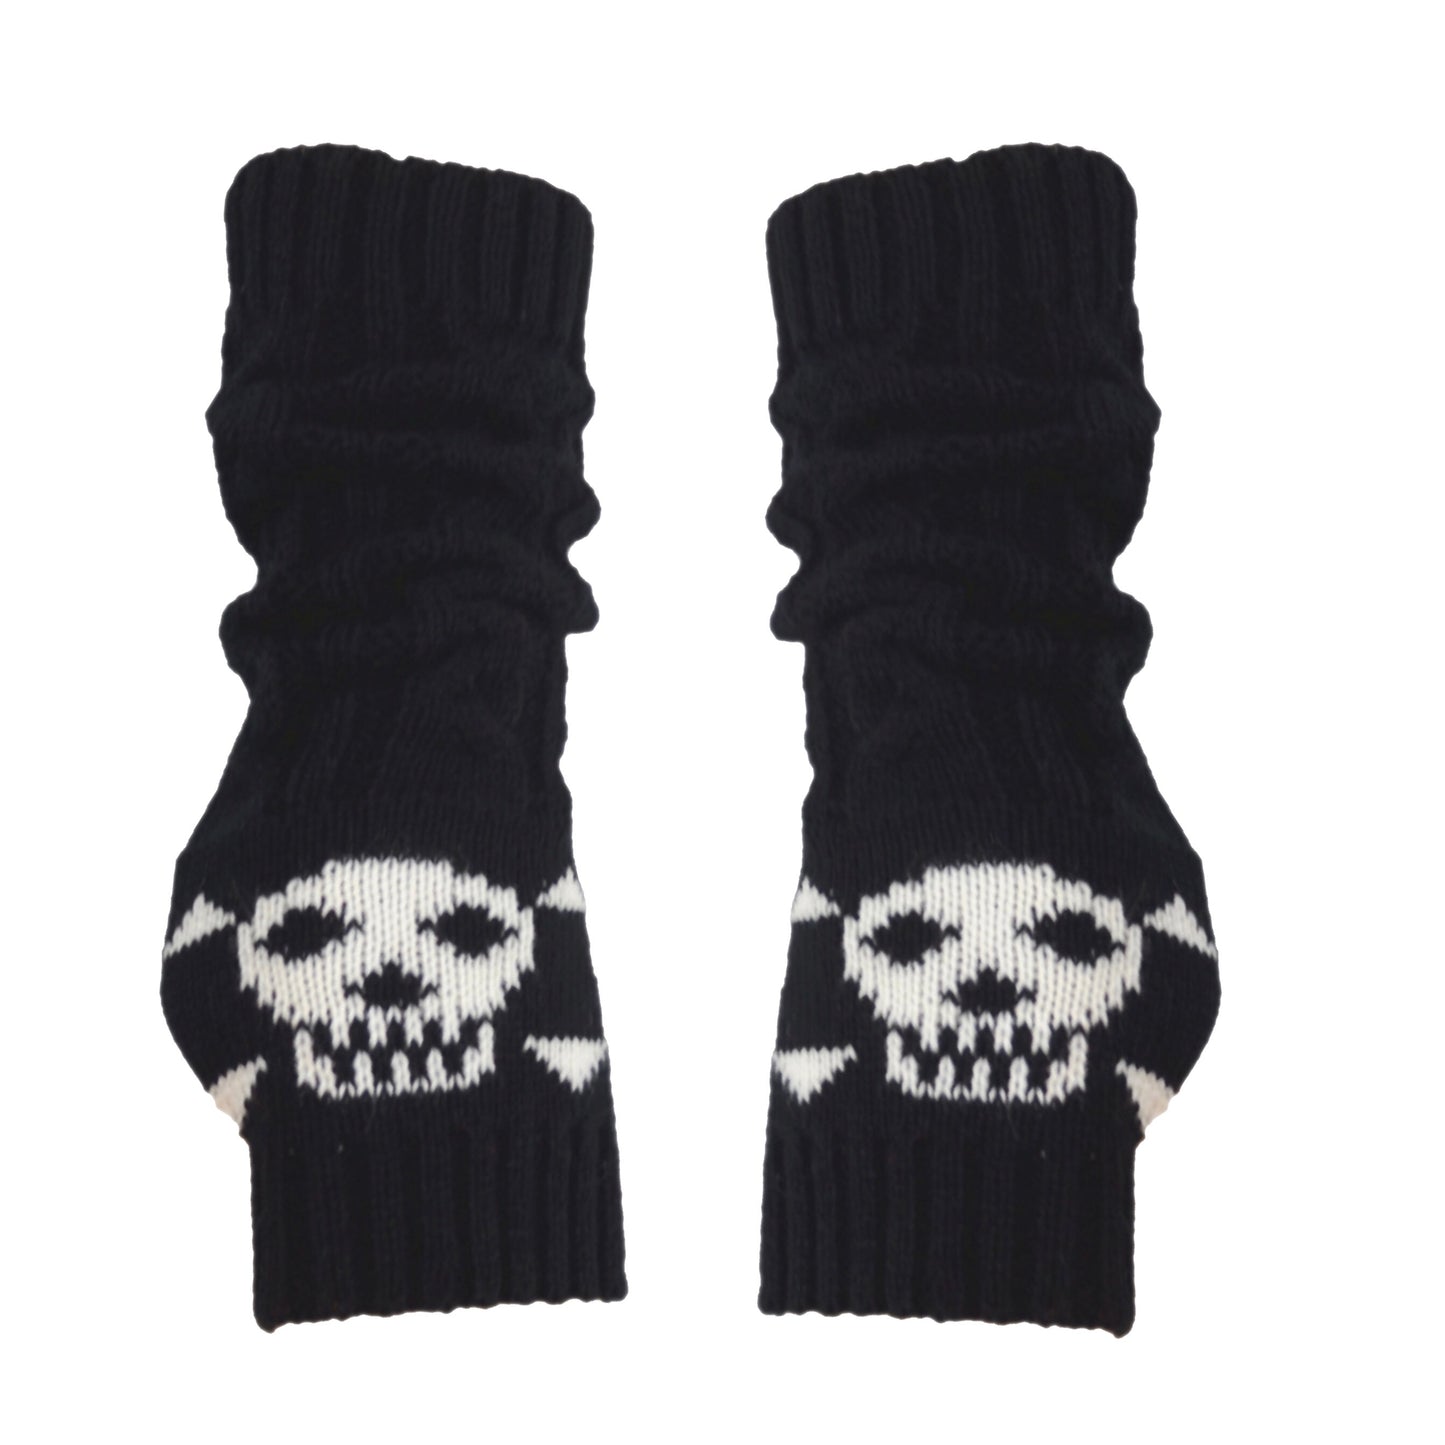 Skull Fingerless Gloves